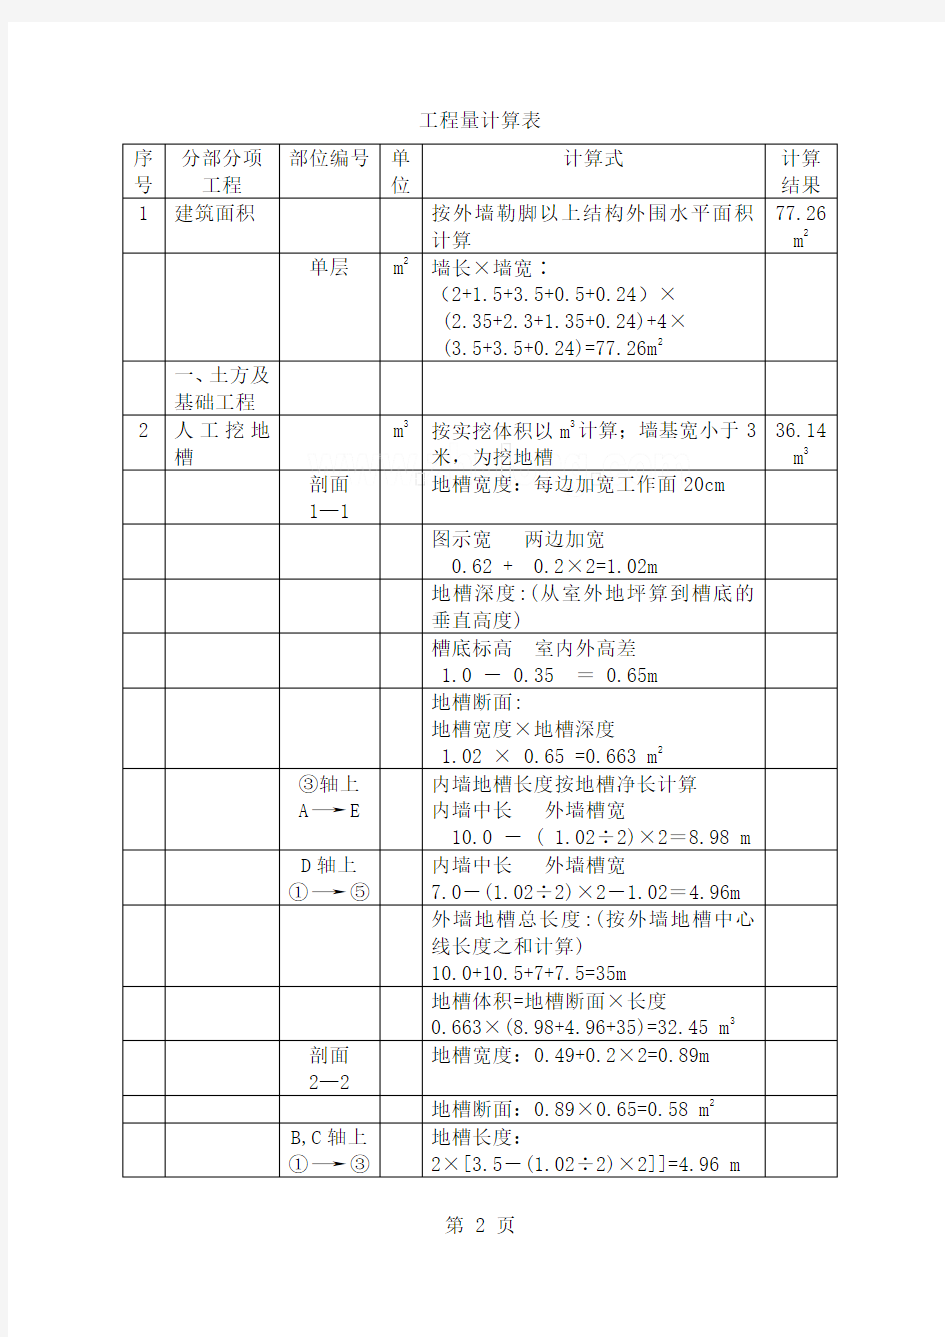 南京办公楼土建工程量计算书(含图纸)-17页文档资料